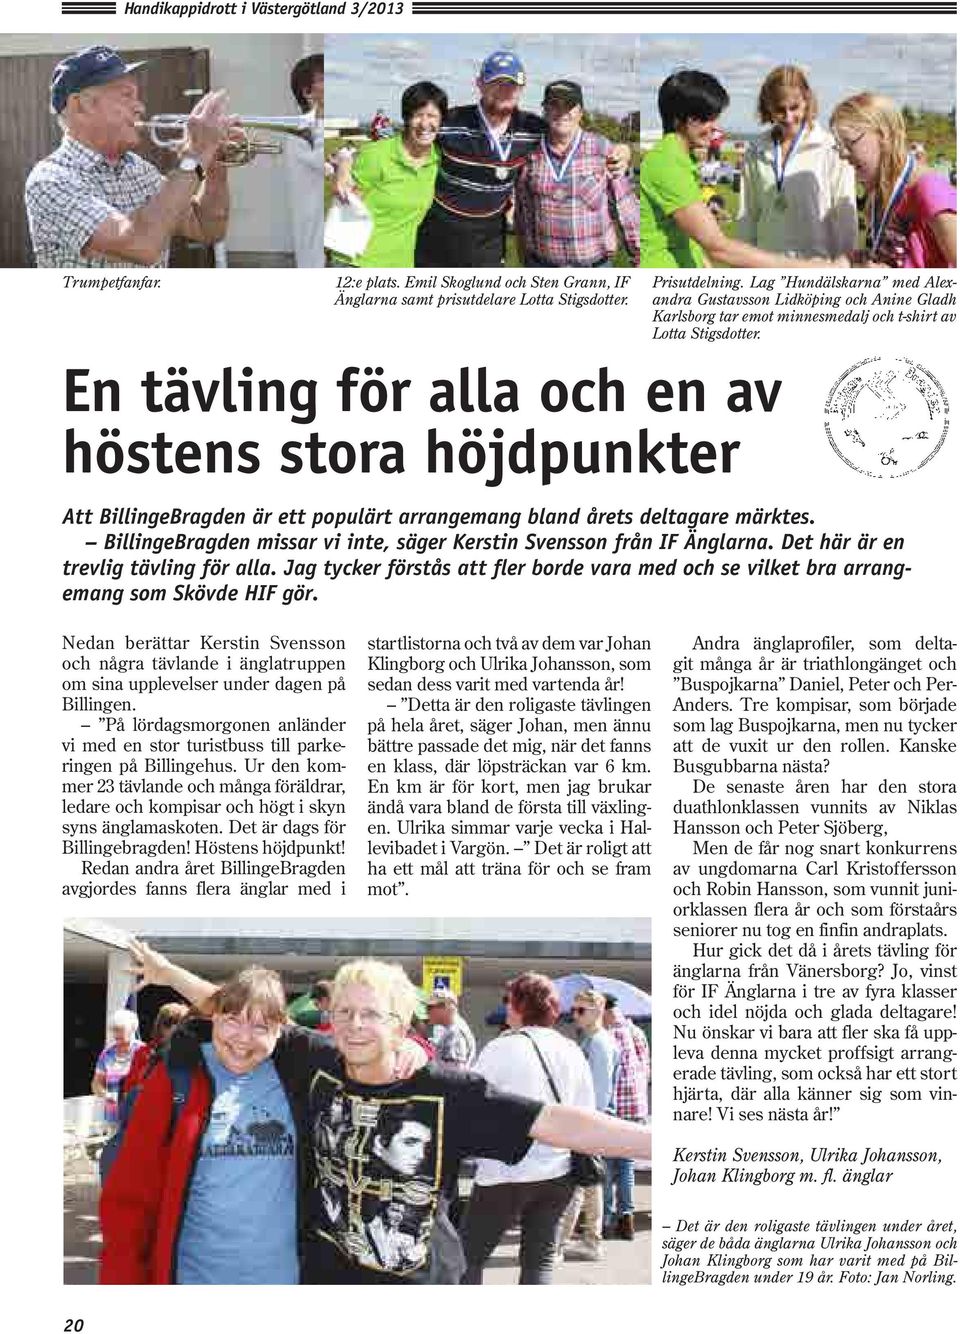 Att BillingeBragden är ett populärt arrangemang bland årets deltagare märktes. BillingeBragden missar vi inte, säger Kerstin Svensson från IF Änglarna. Det här är en trevlig tävling för alla.